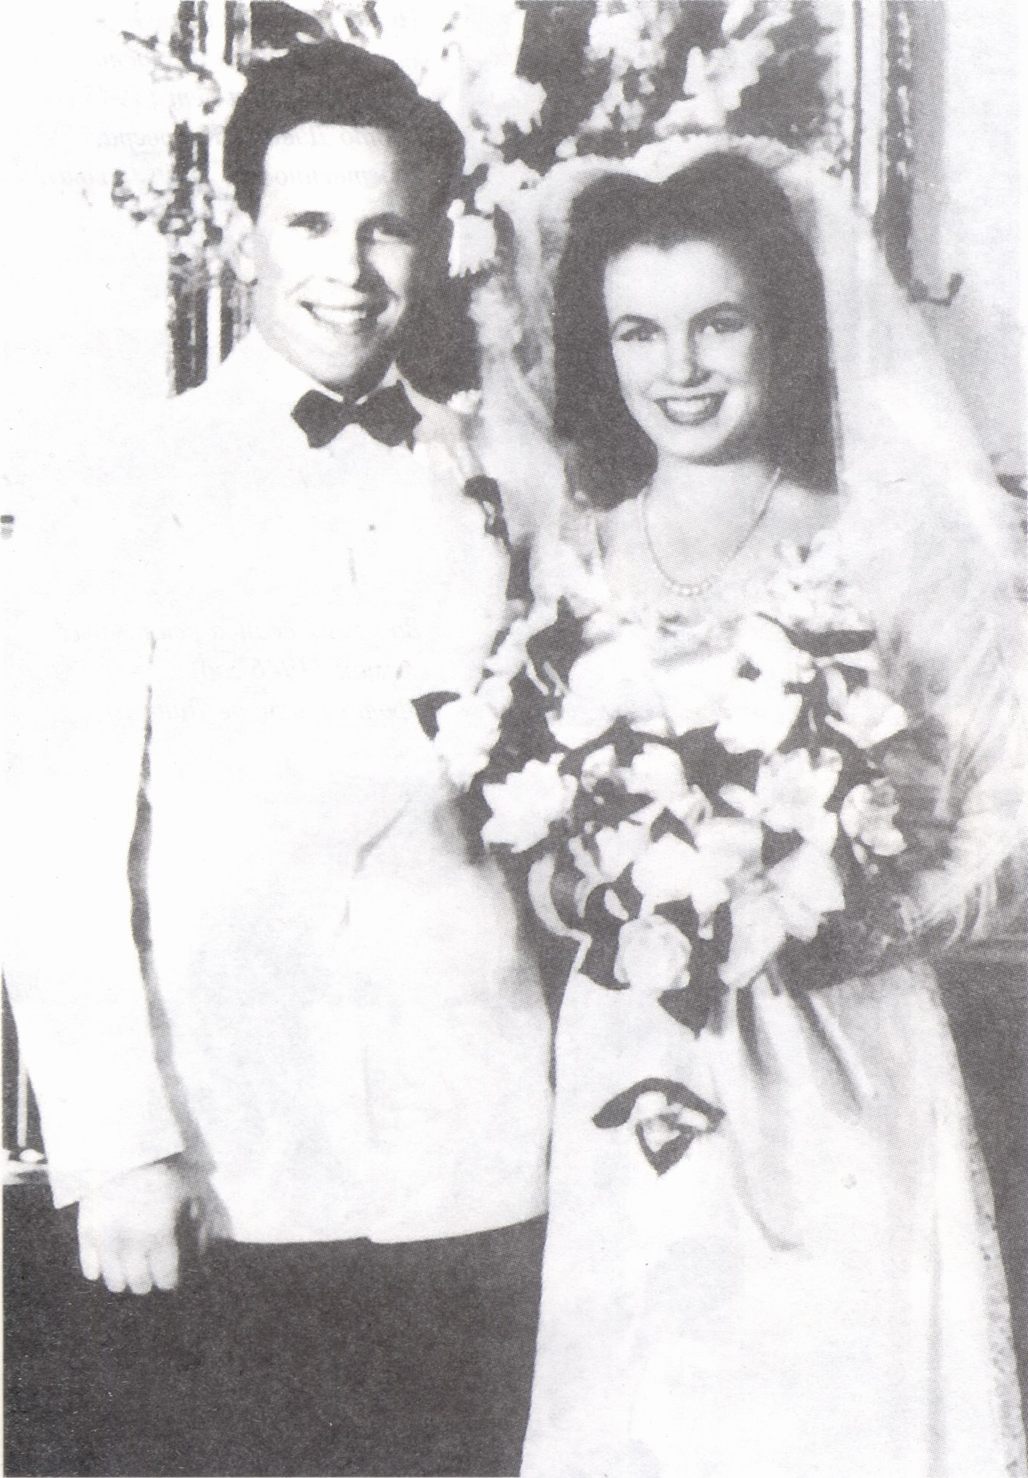 Норма Джин Бейкер и Джеймс Доухерти в день бракосочетания. Лос-Анджелес, июнь 1942 года (фото Акселя Фогга)